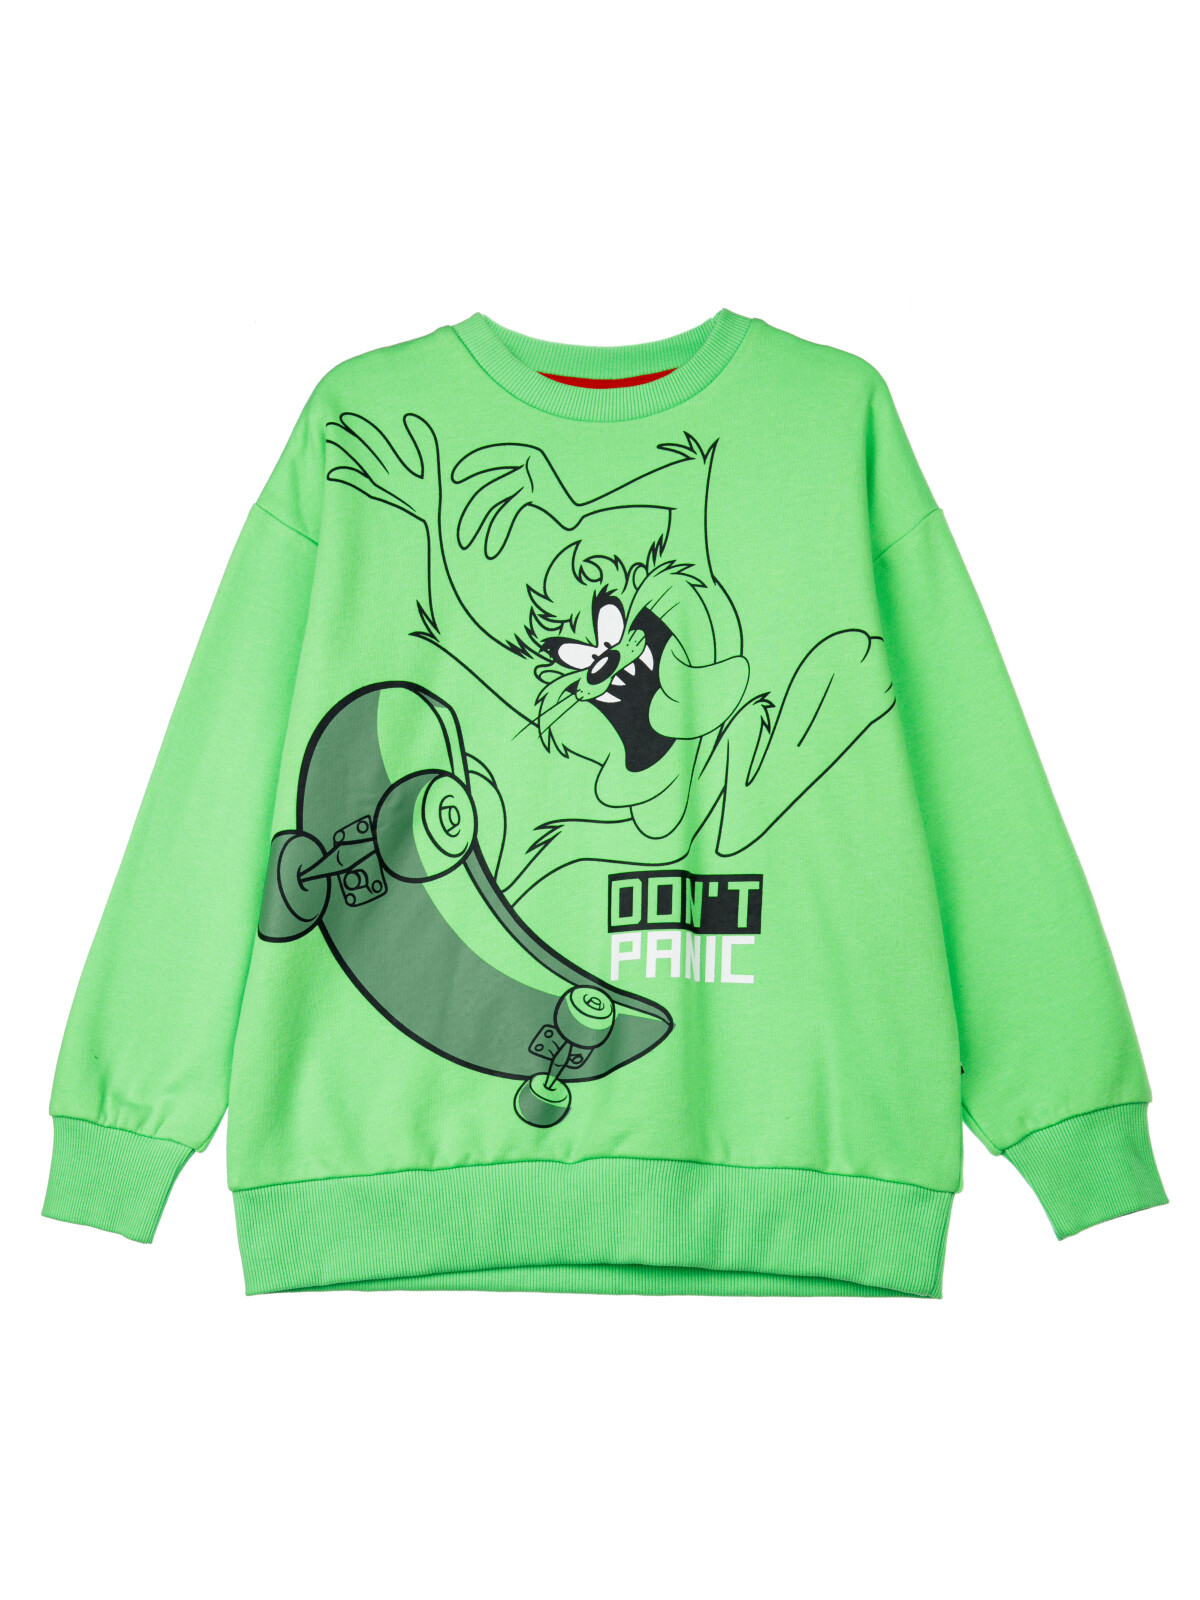 Детский свитшот PlayToday 12431001, цвет зеленого, размер 176.